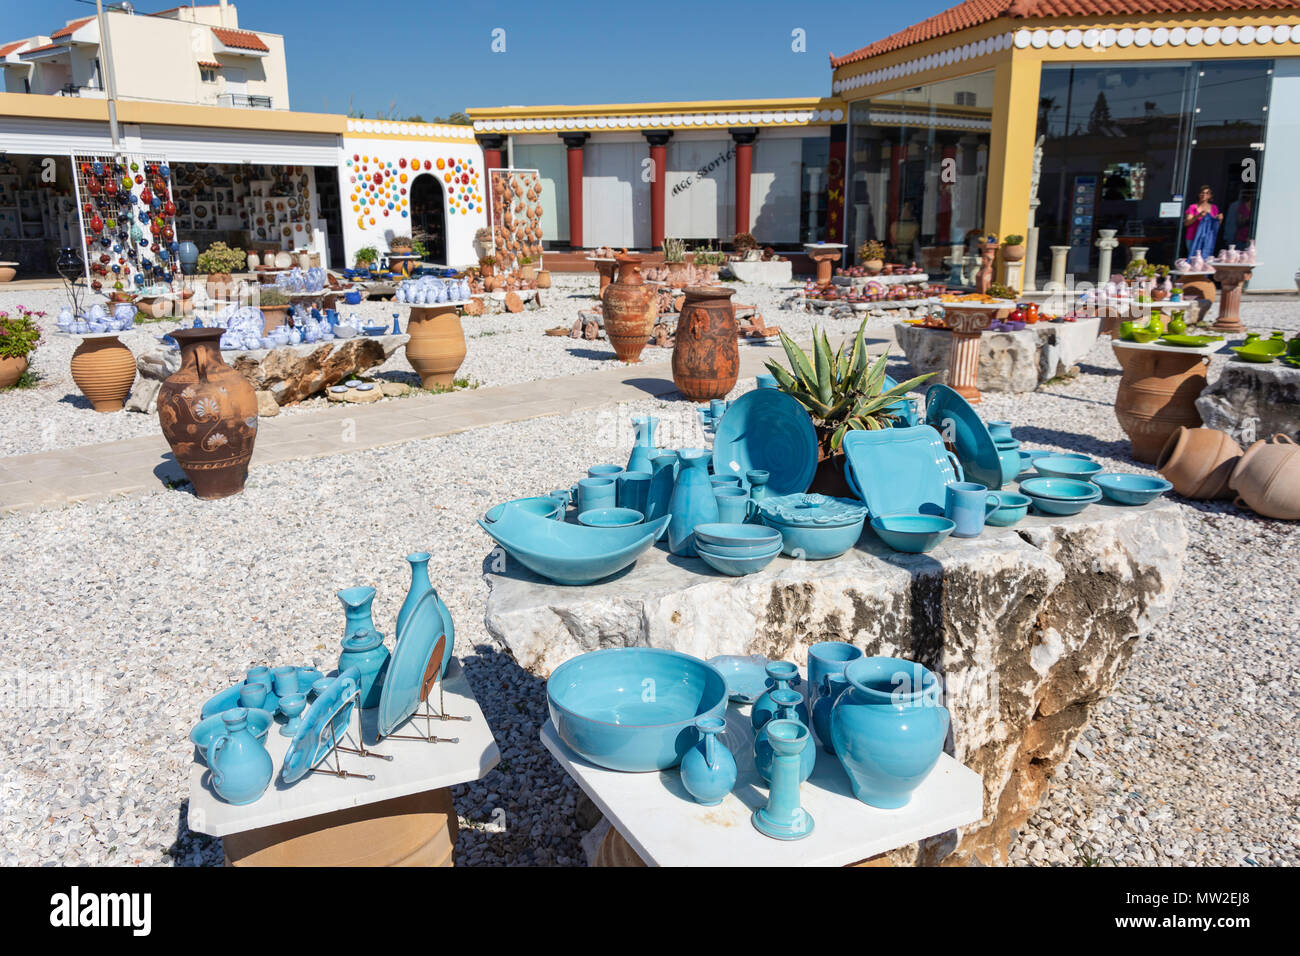 Keramische Werkstatt anzuzeigen, Scansano, Rethymno, Kreta (Kriti), Griechenland Stockfoto